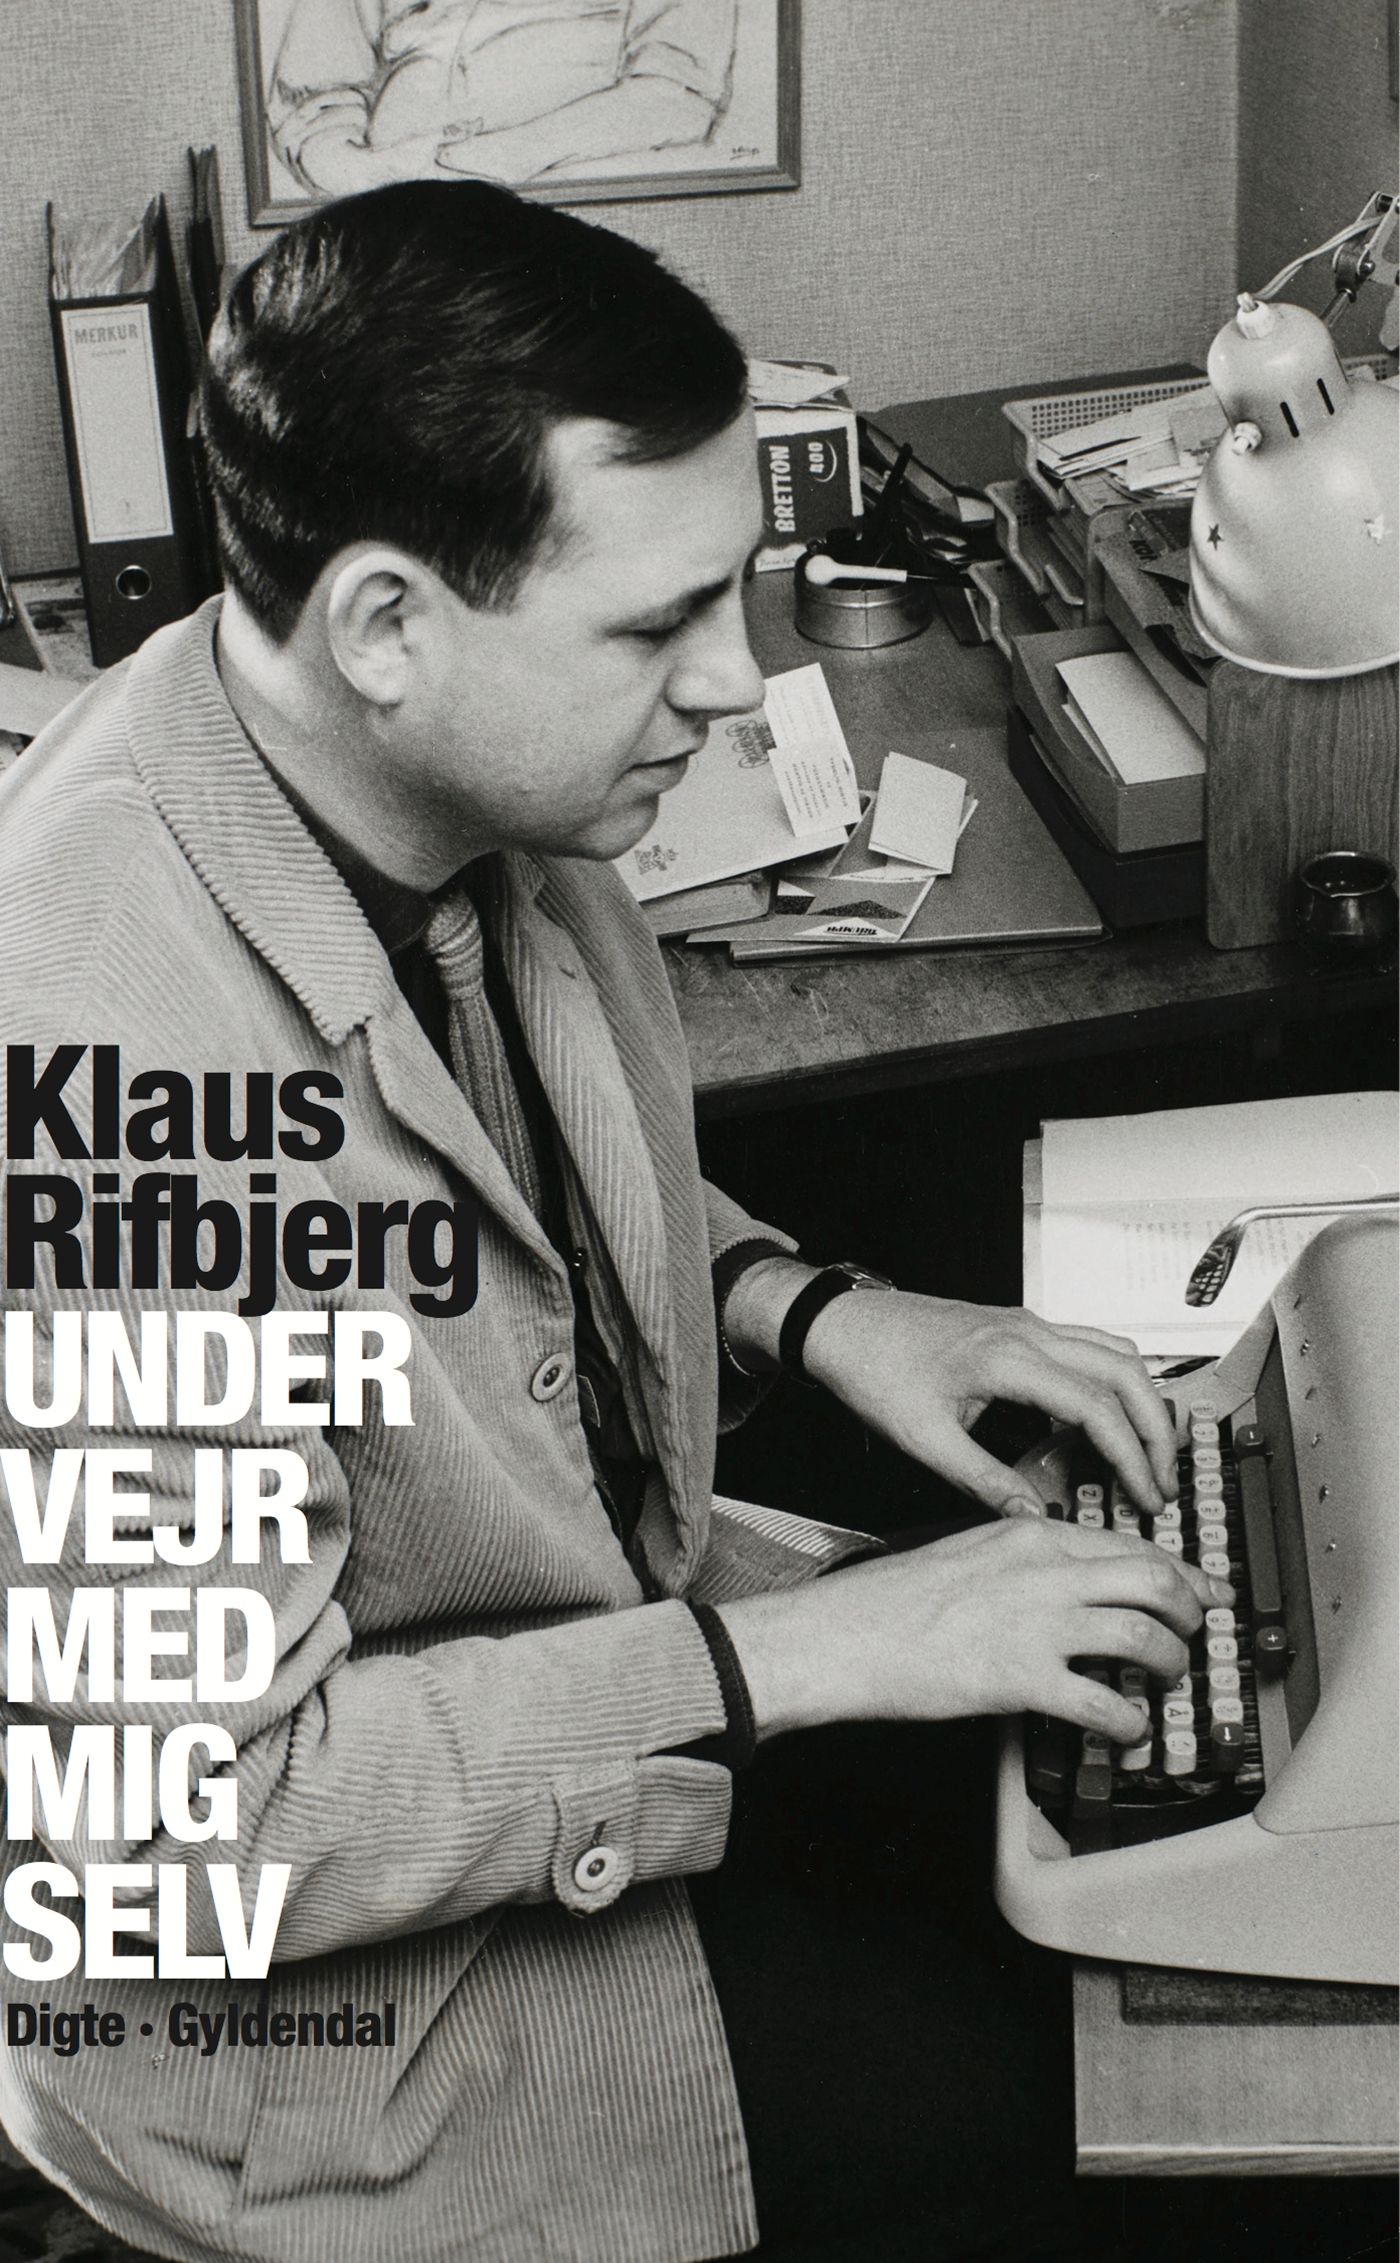 Under vejr med mig selv, e-bog af Klaus Rifbjerg